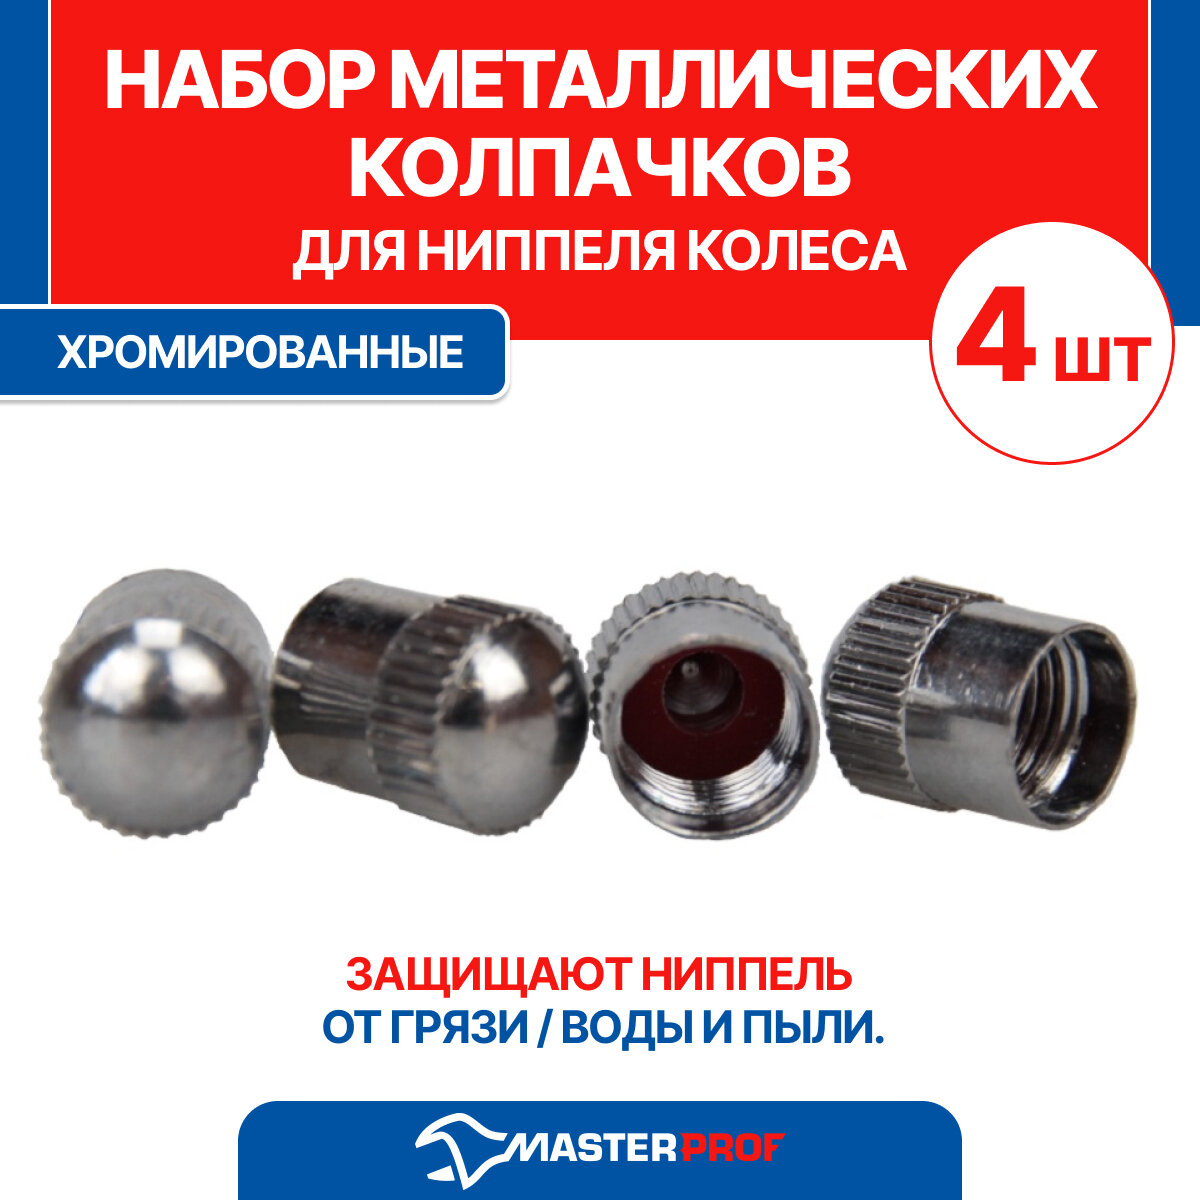 Набор хромированных металлических колпачков для ниппеля колеса MasterProf 4 шт. АС.010014